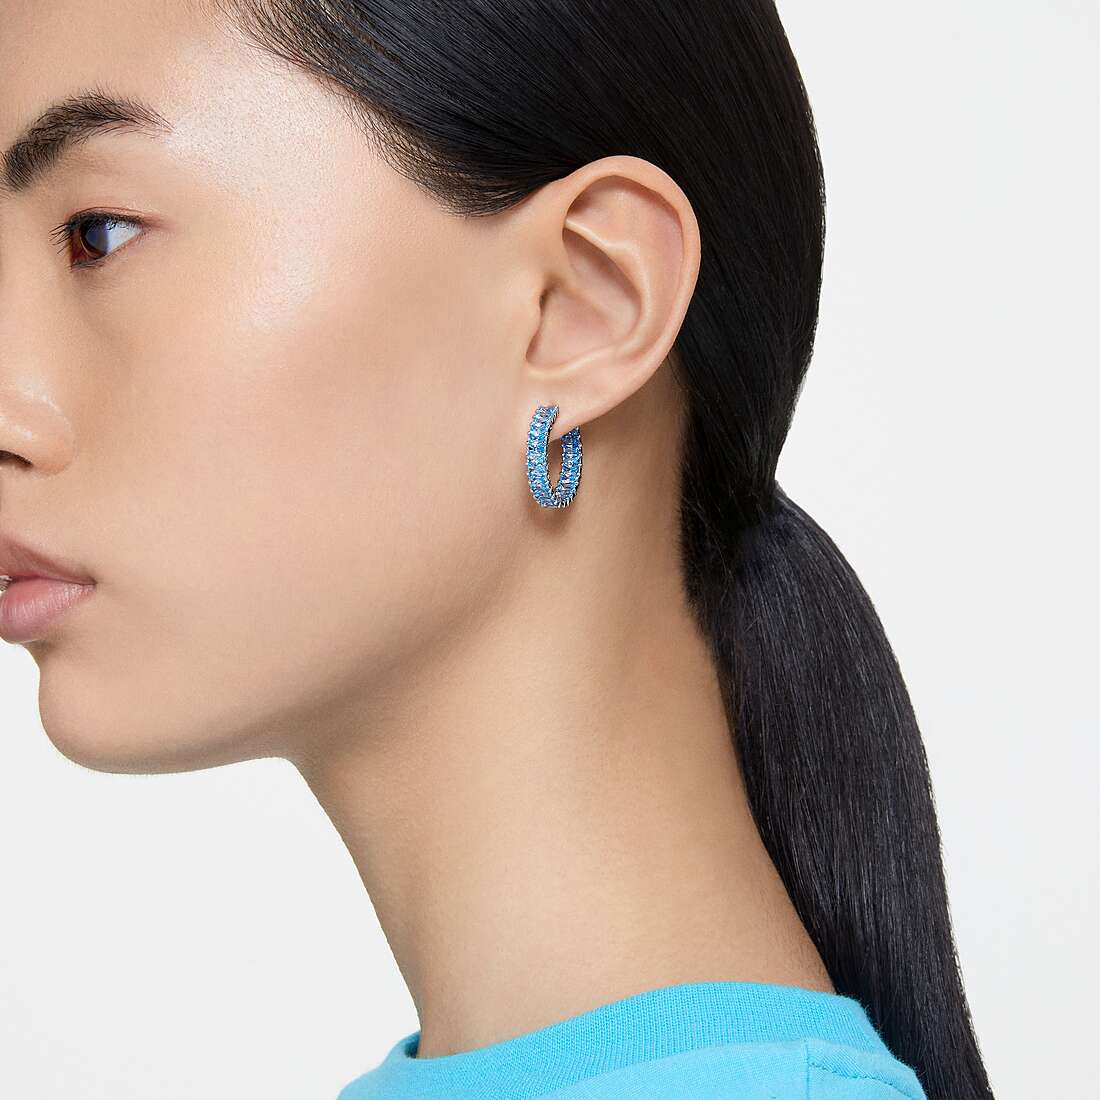 Swarovski earrings woman 5659037 photo wearing